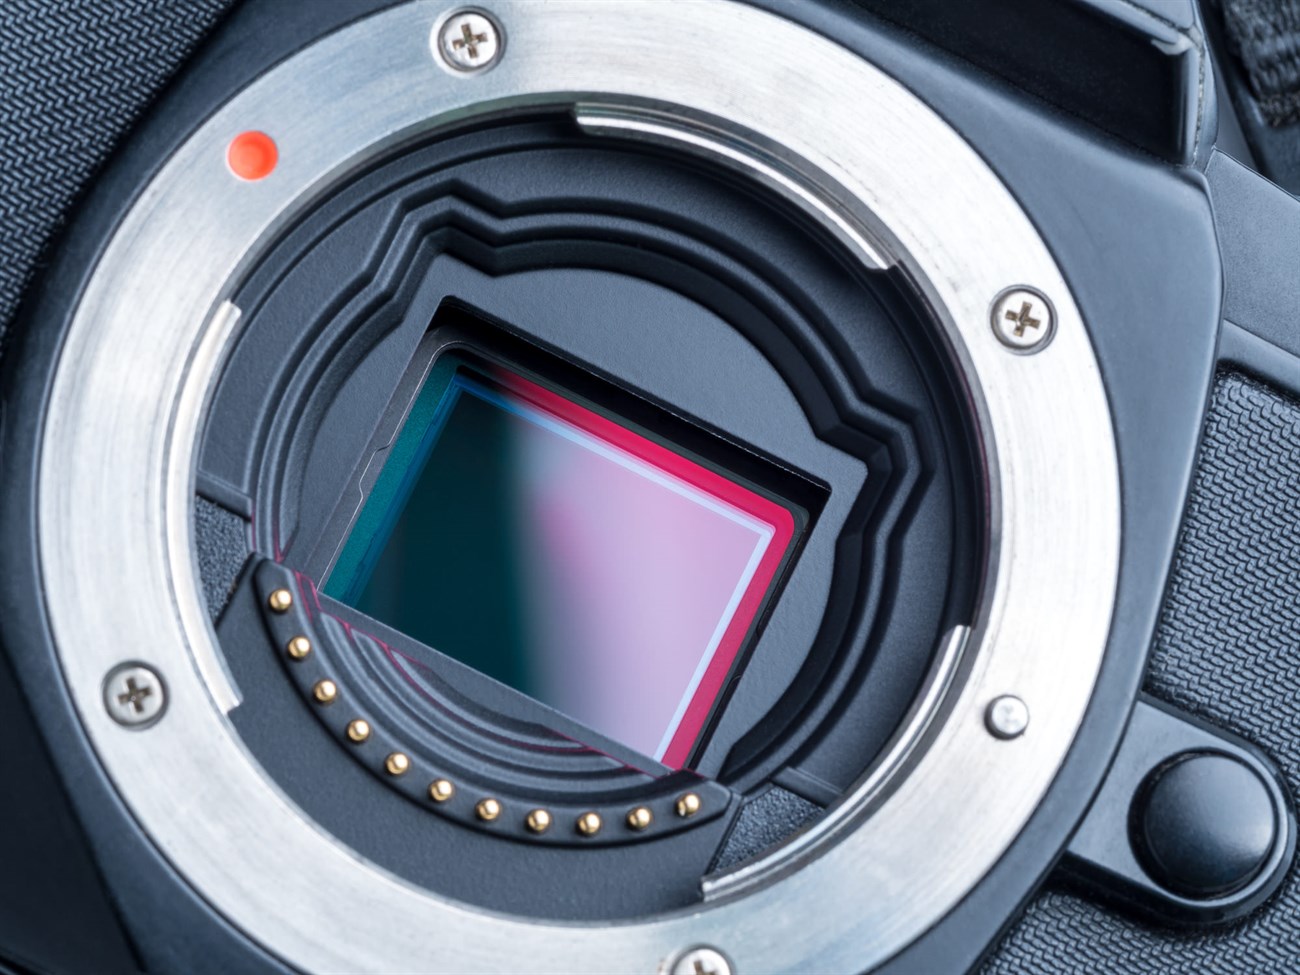 Sensor trong máy ảnh là gì? Hiểu rõ các loại và công nghệ mới nhất